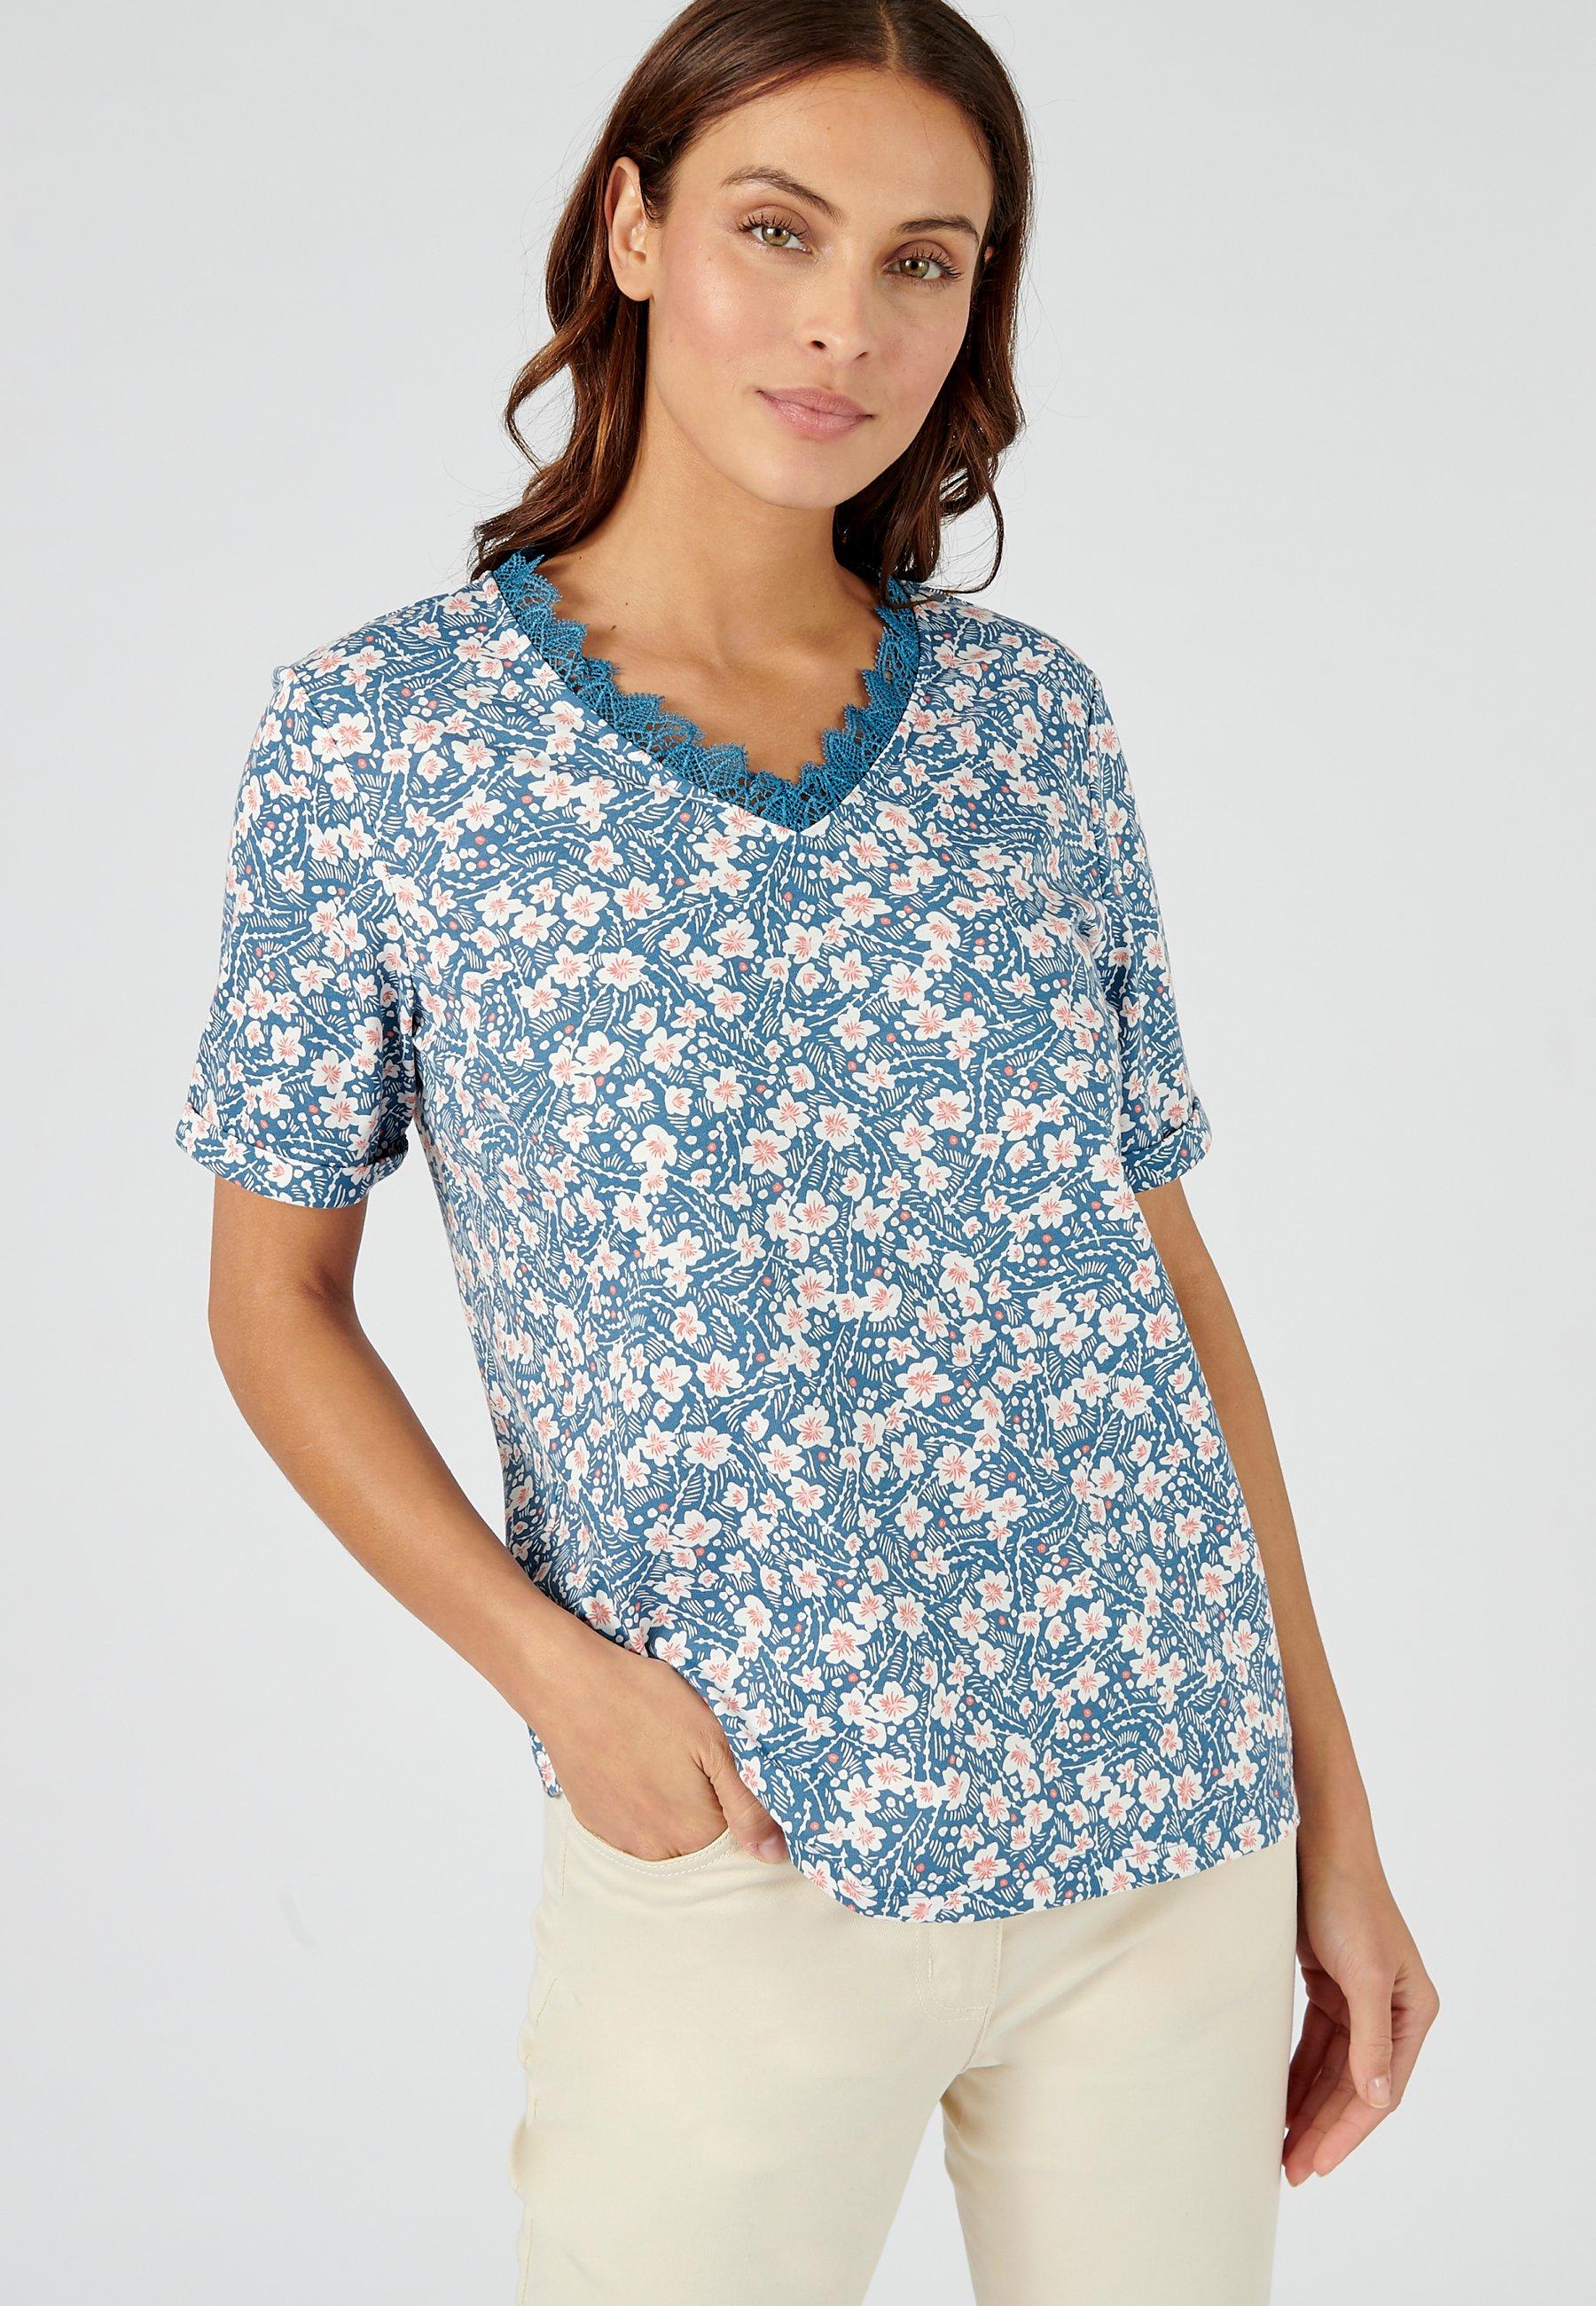 T-shirt Mit Blumenprint. Damen Blau 50/52 von Damart